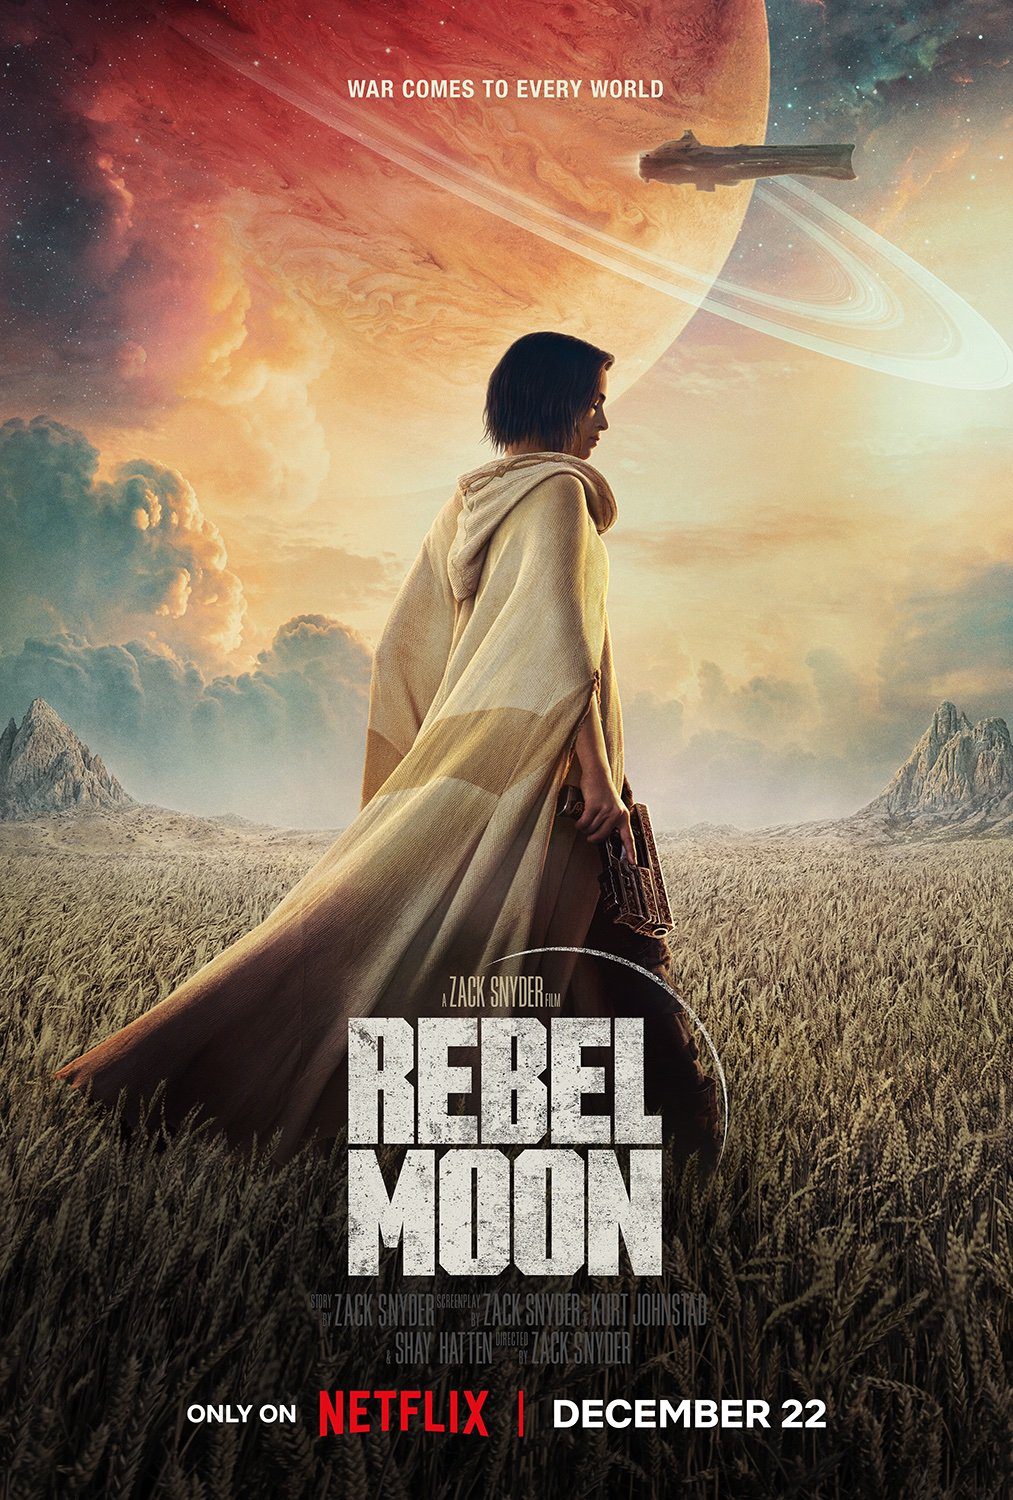 Rebel Moon: veja o primeiro trailer do novo filme de Zack Snyder para a  Netflix